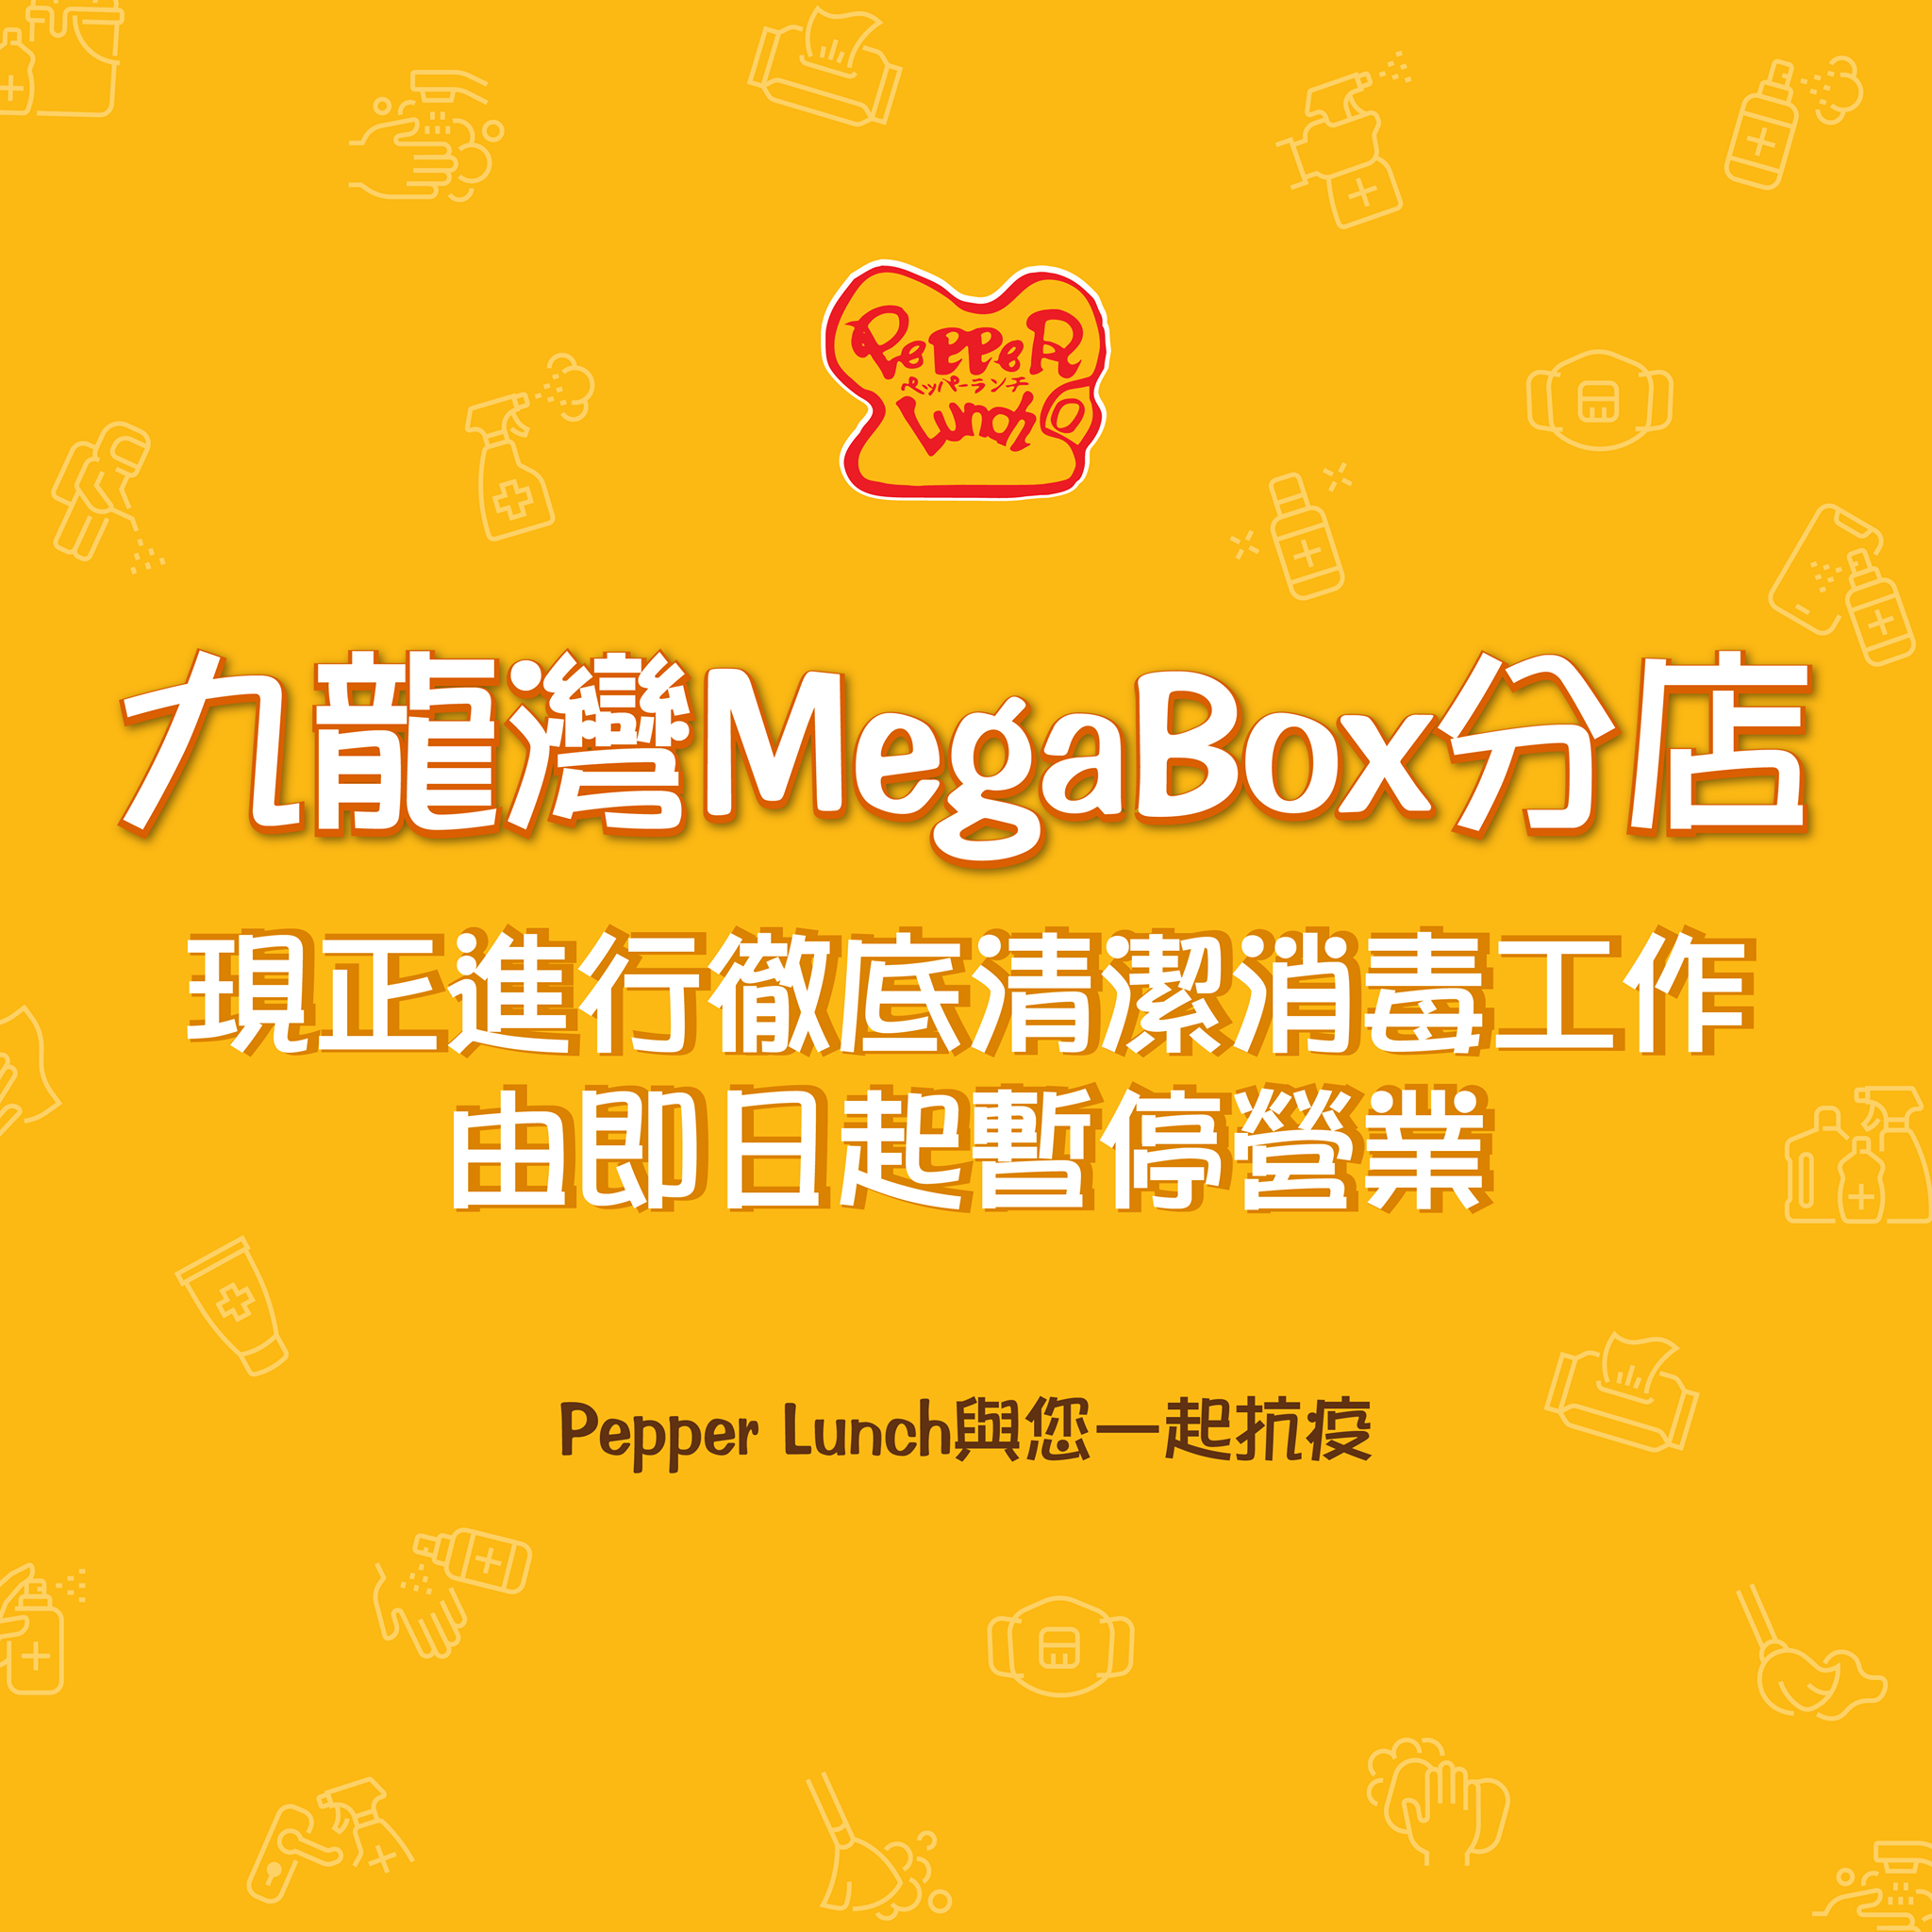 【九龍灣 MegaBox分店由即日起暫停營業進行徹底清潔消毒工作】⁣